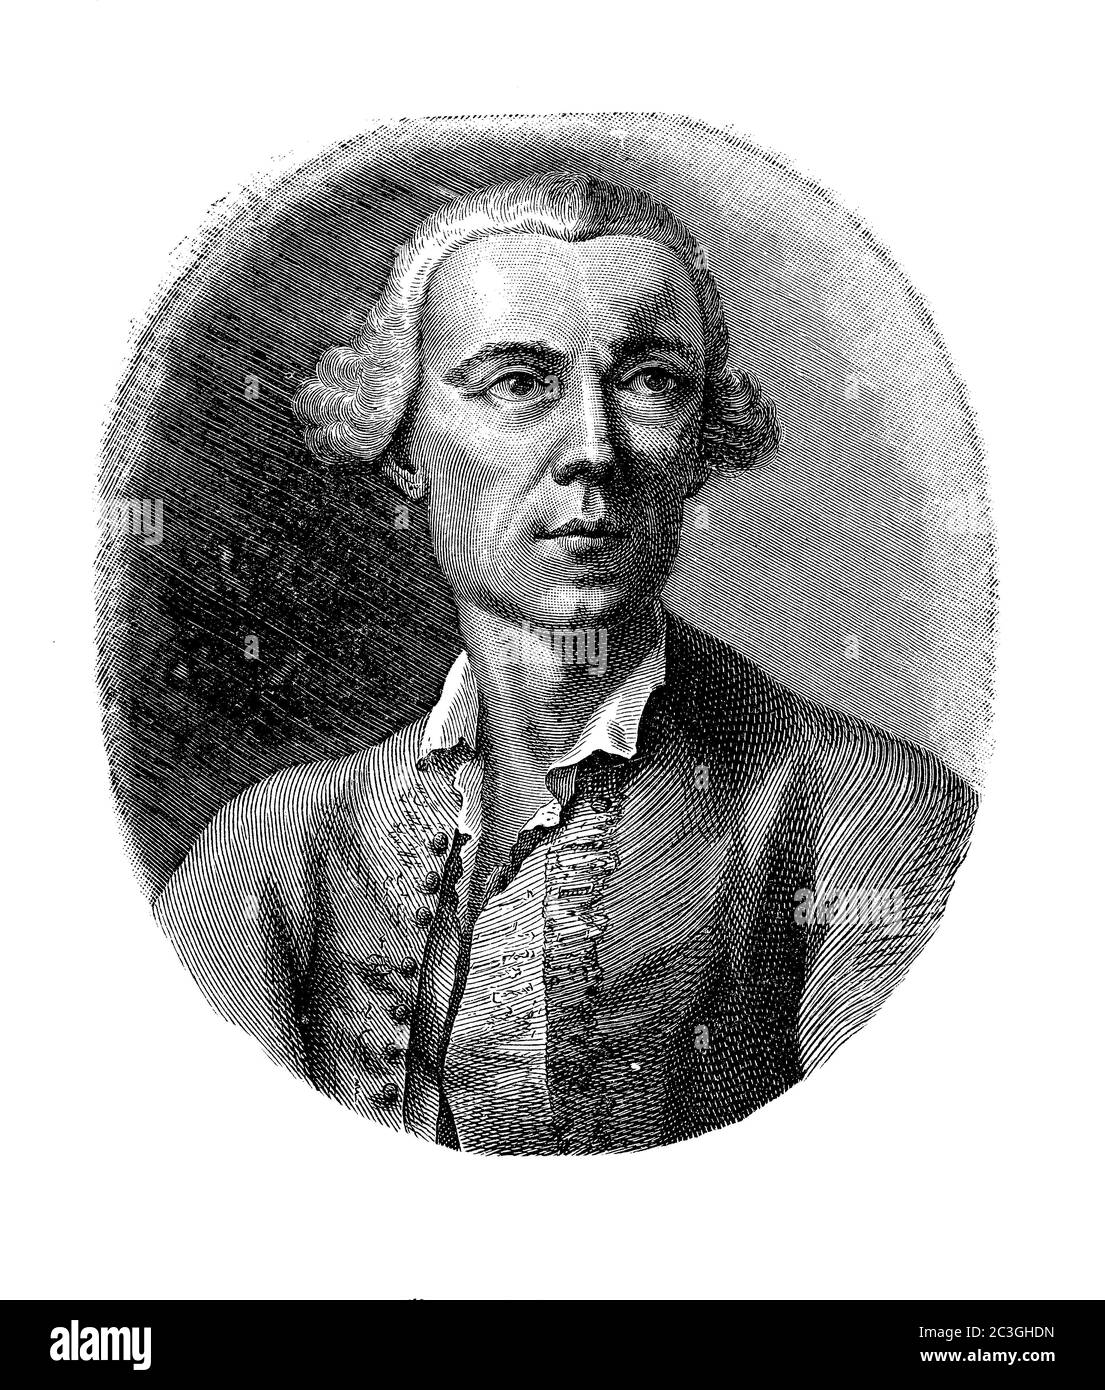 Portrait de gravure du Comte Gasparo Gozzi ( 1713 - 1786) critique vénitienne et dramatiste, comme le journaliste a lancé la Gazzetta Veneta suivie de l'Osservatore Veneto Banque D'Images